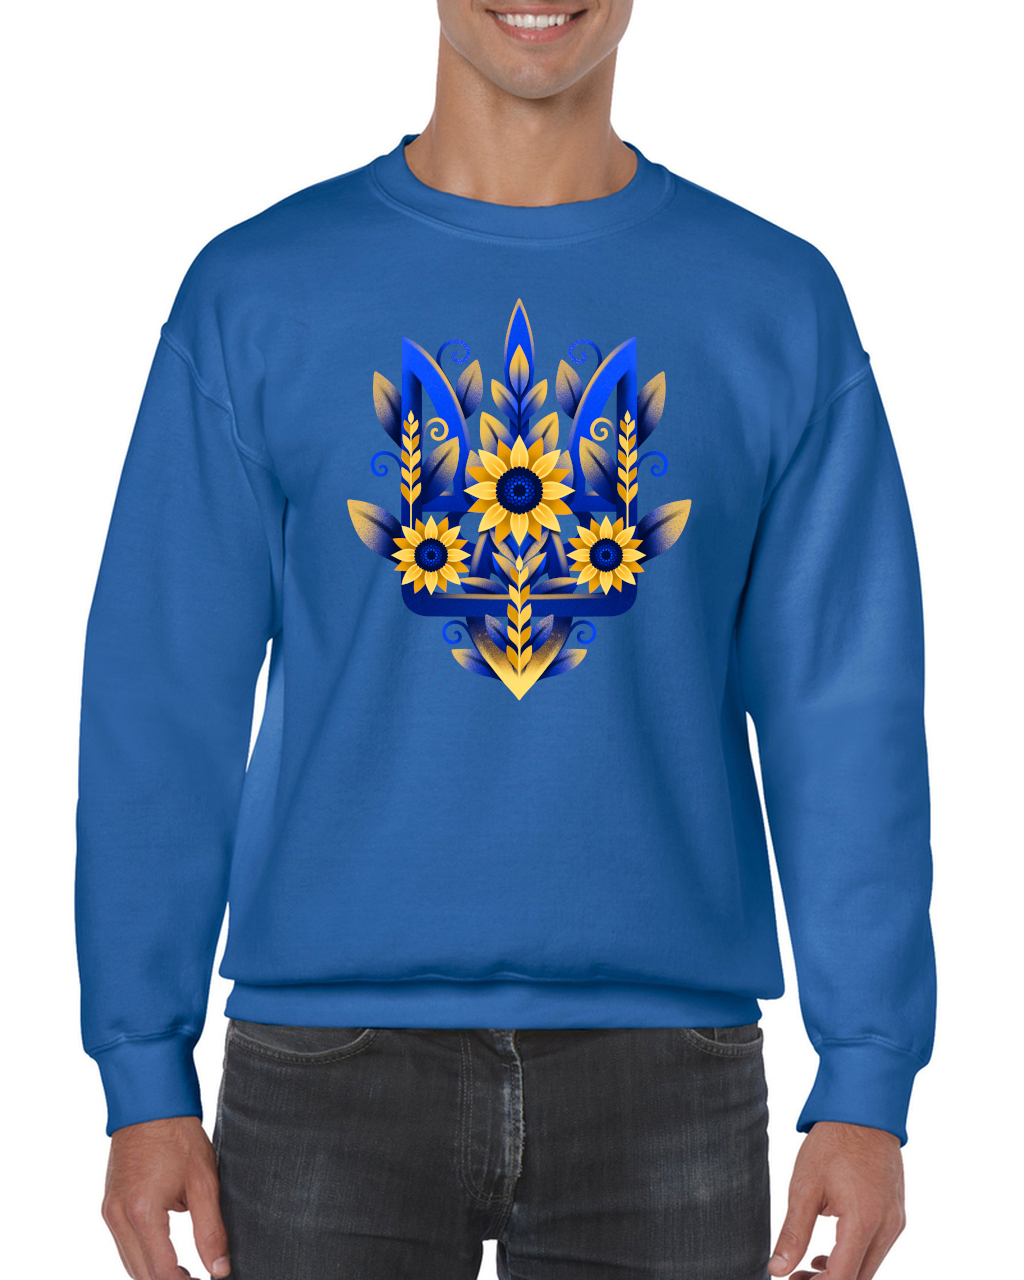 Adult unisex sweatshirt "Sunflower Tryzub"